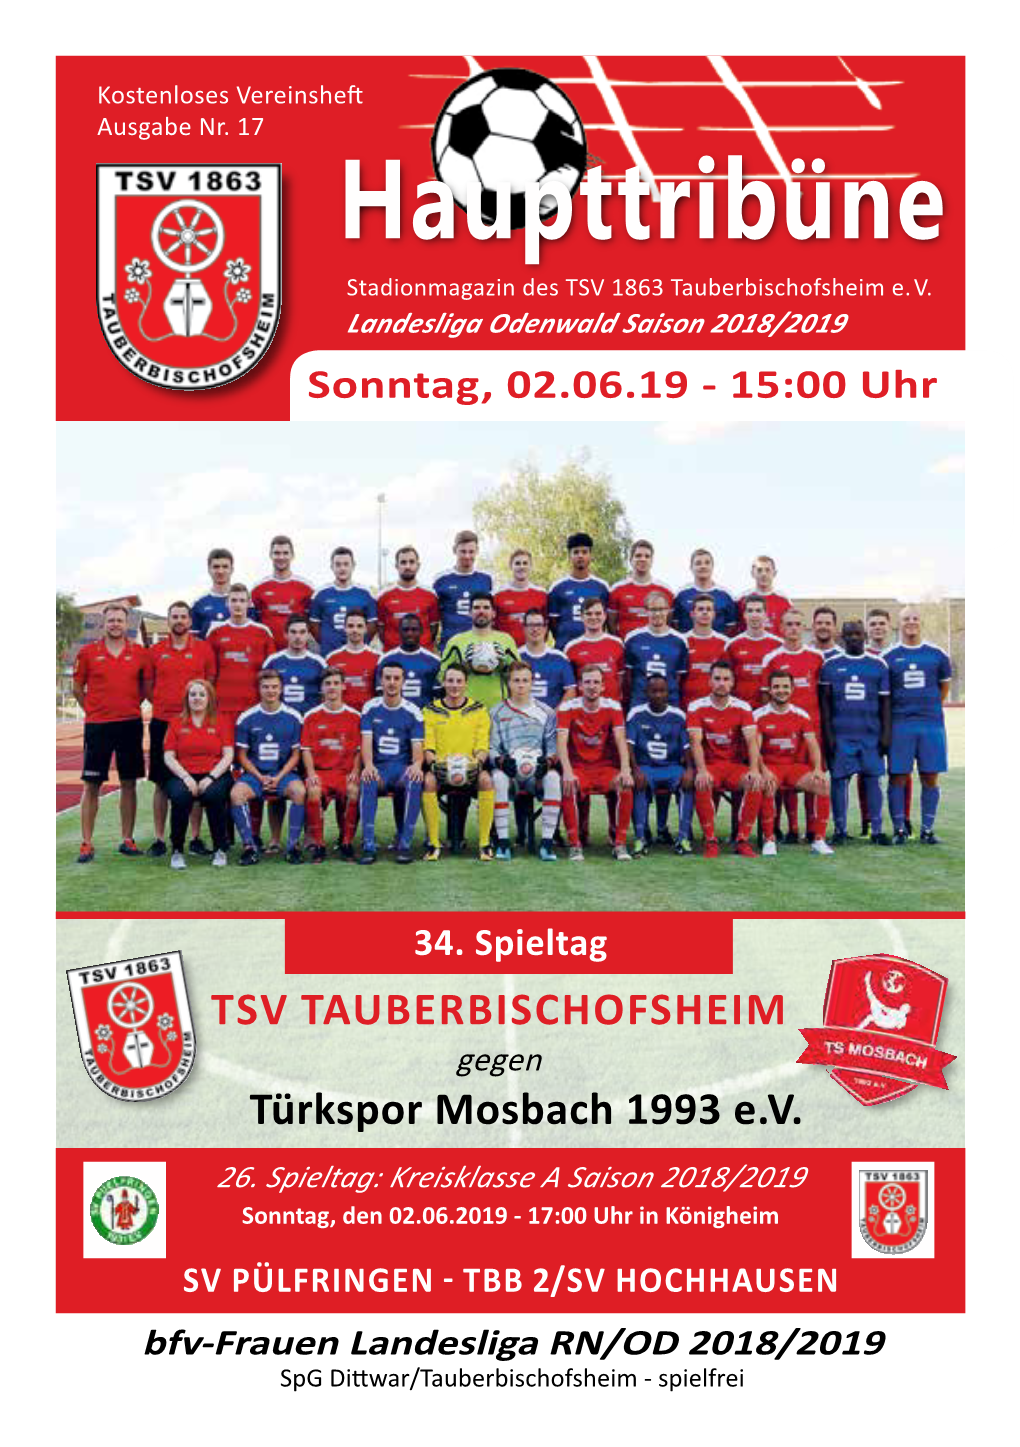 Haupttribüne Stadionmagazin Des TSV 1863 Tauberbischofsheim E